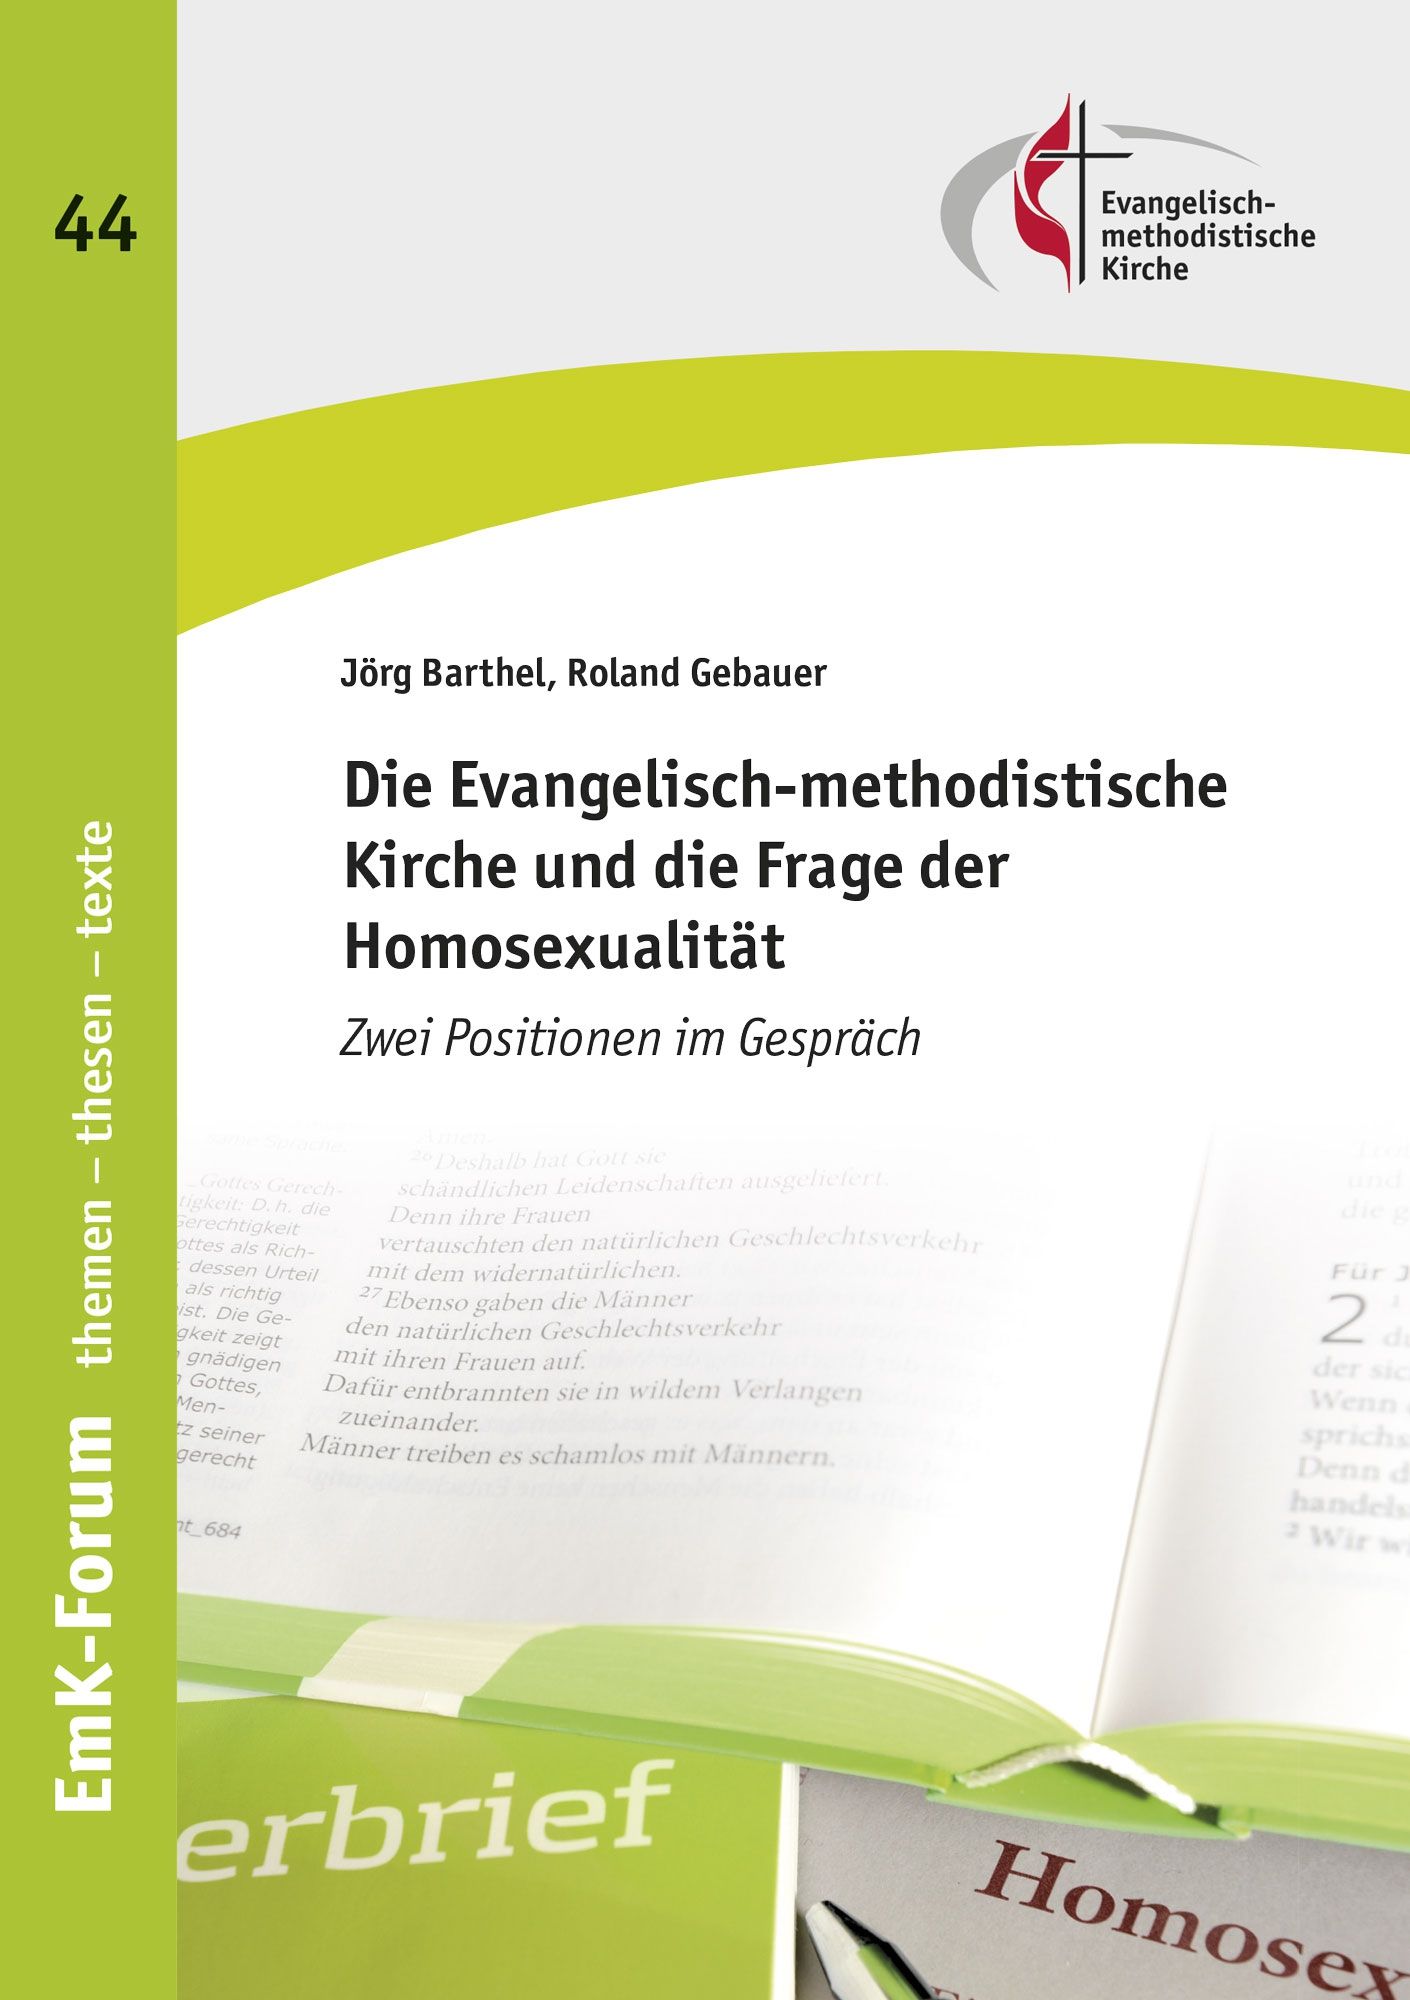 Die Evangelisch-methodistische Kirche und die Frage der Homosexualität - Zwei Positionen im Gespräch - EmK-Forum 44